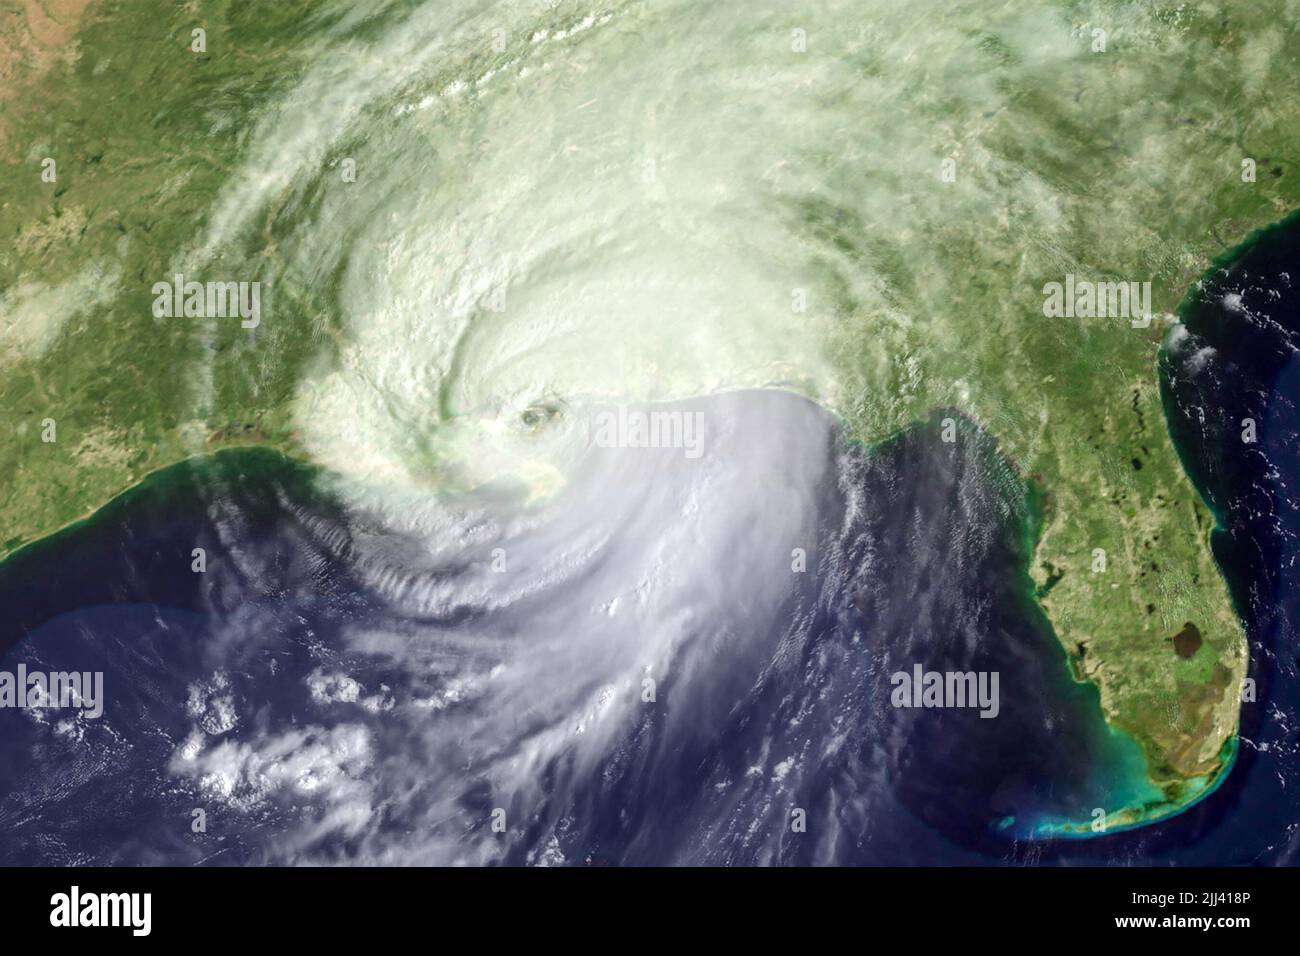 El huracán Katrina, una devastadora tormenta de categoría 5, aterrizó cerca de Nueva Orleans, Luisiana, el 29 de agosto de 2005. (ESTADOS UNIDOS) Foto de stock